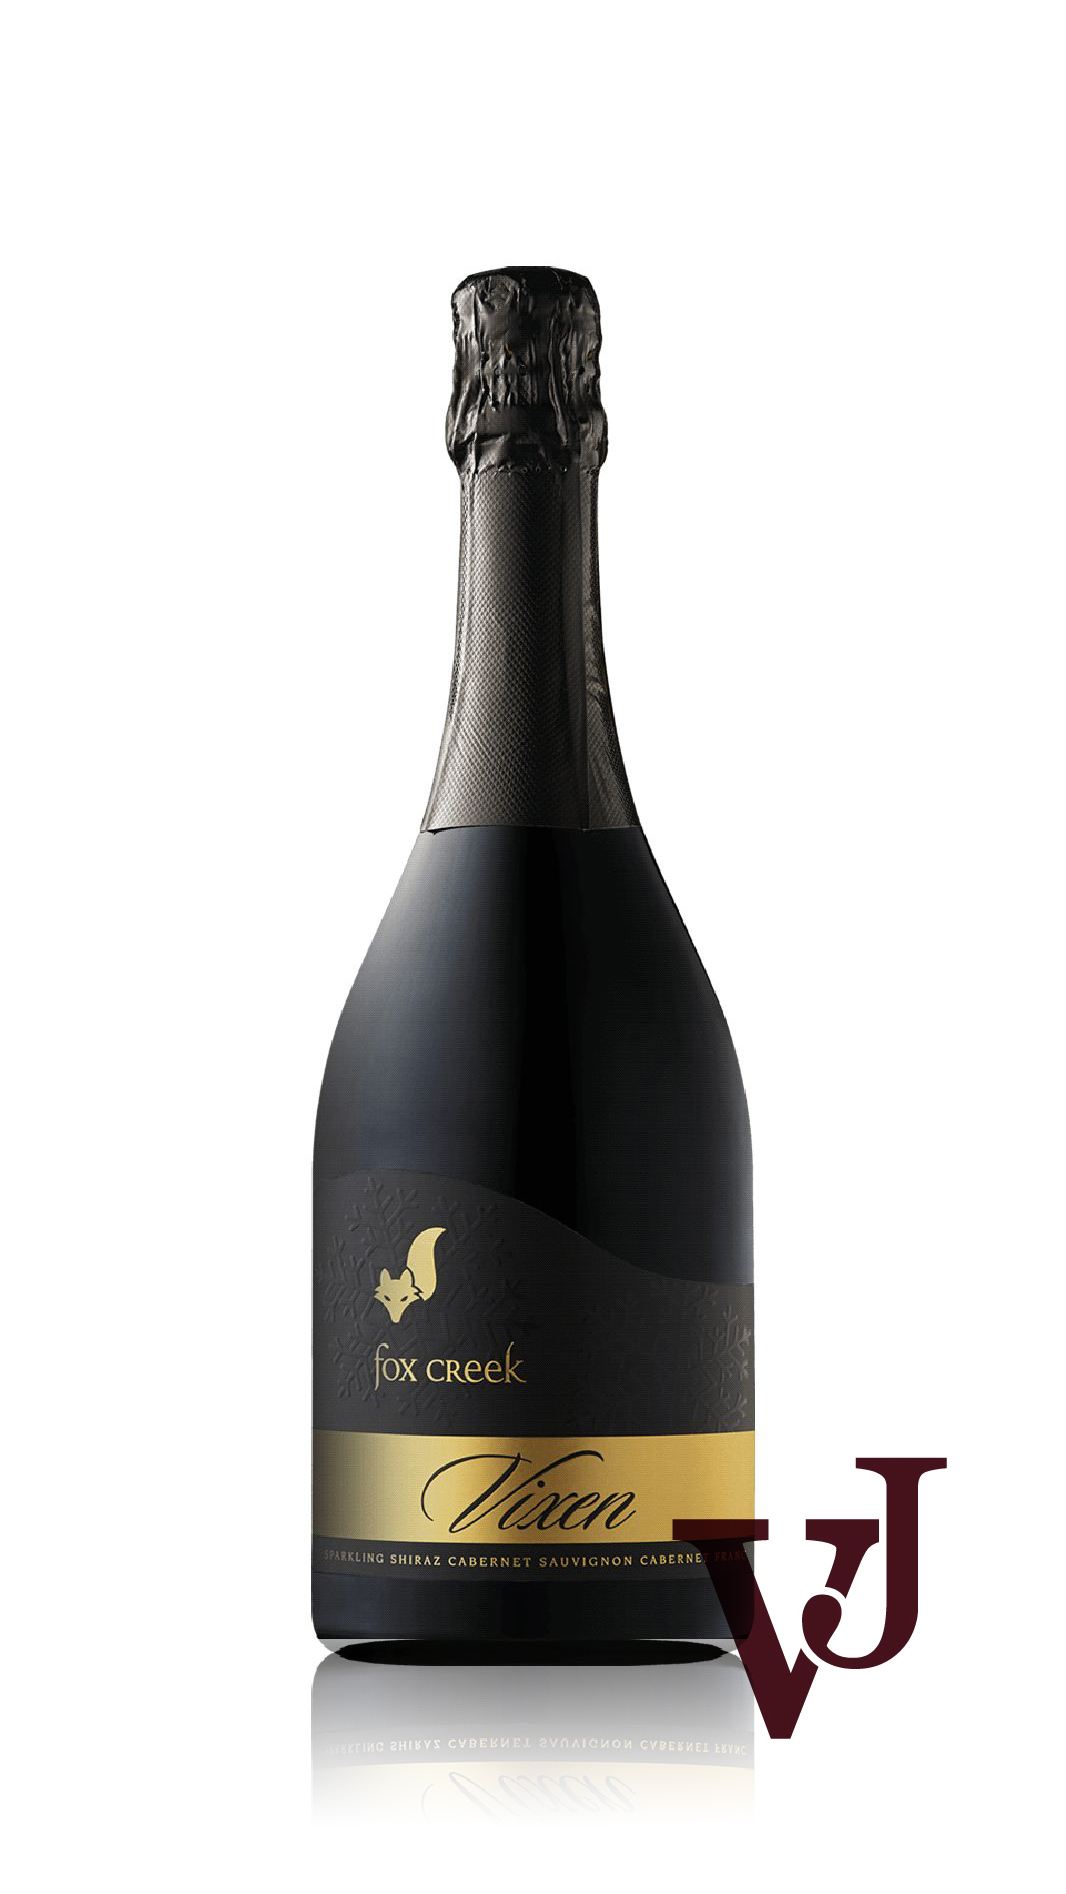 Mousserande Vin - Fox Creek Vixen artikel nummer 7757601 från producenten Fox Creek Wines från området Australien